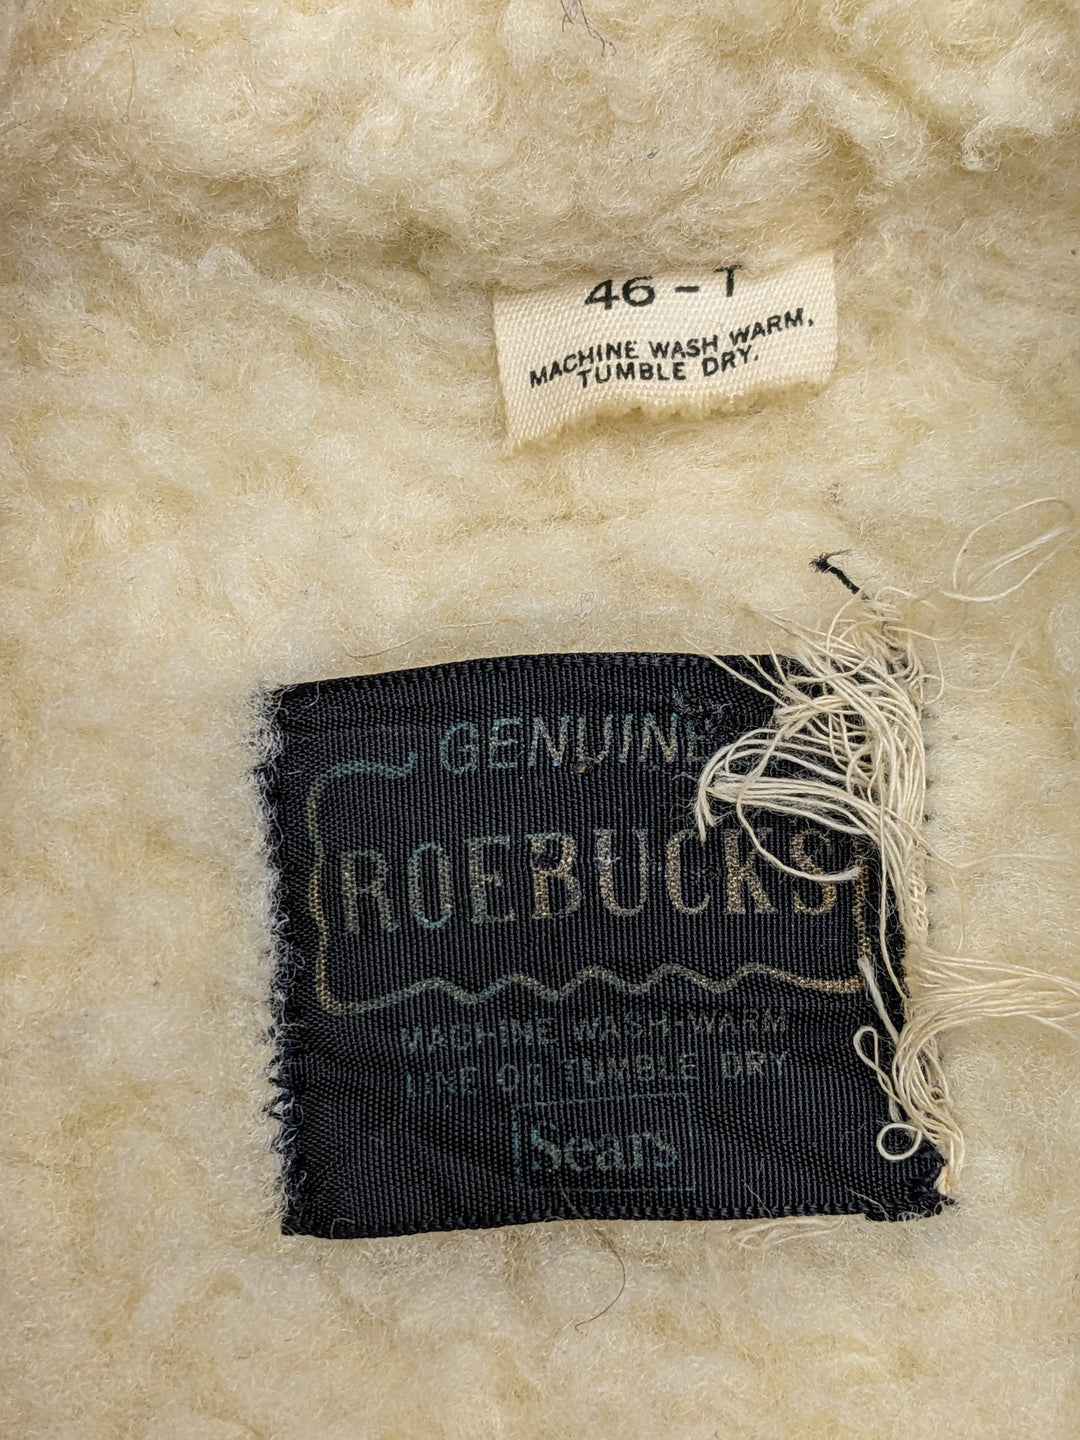 Vintage Sears Roebucks Jacket 1 pc 3 lbs C0422208-05